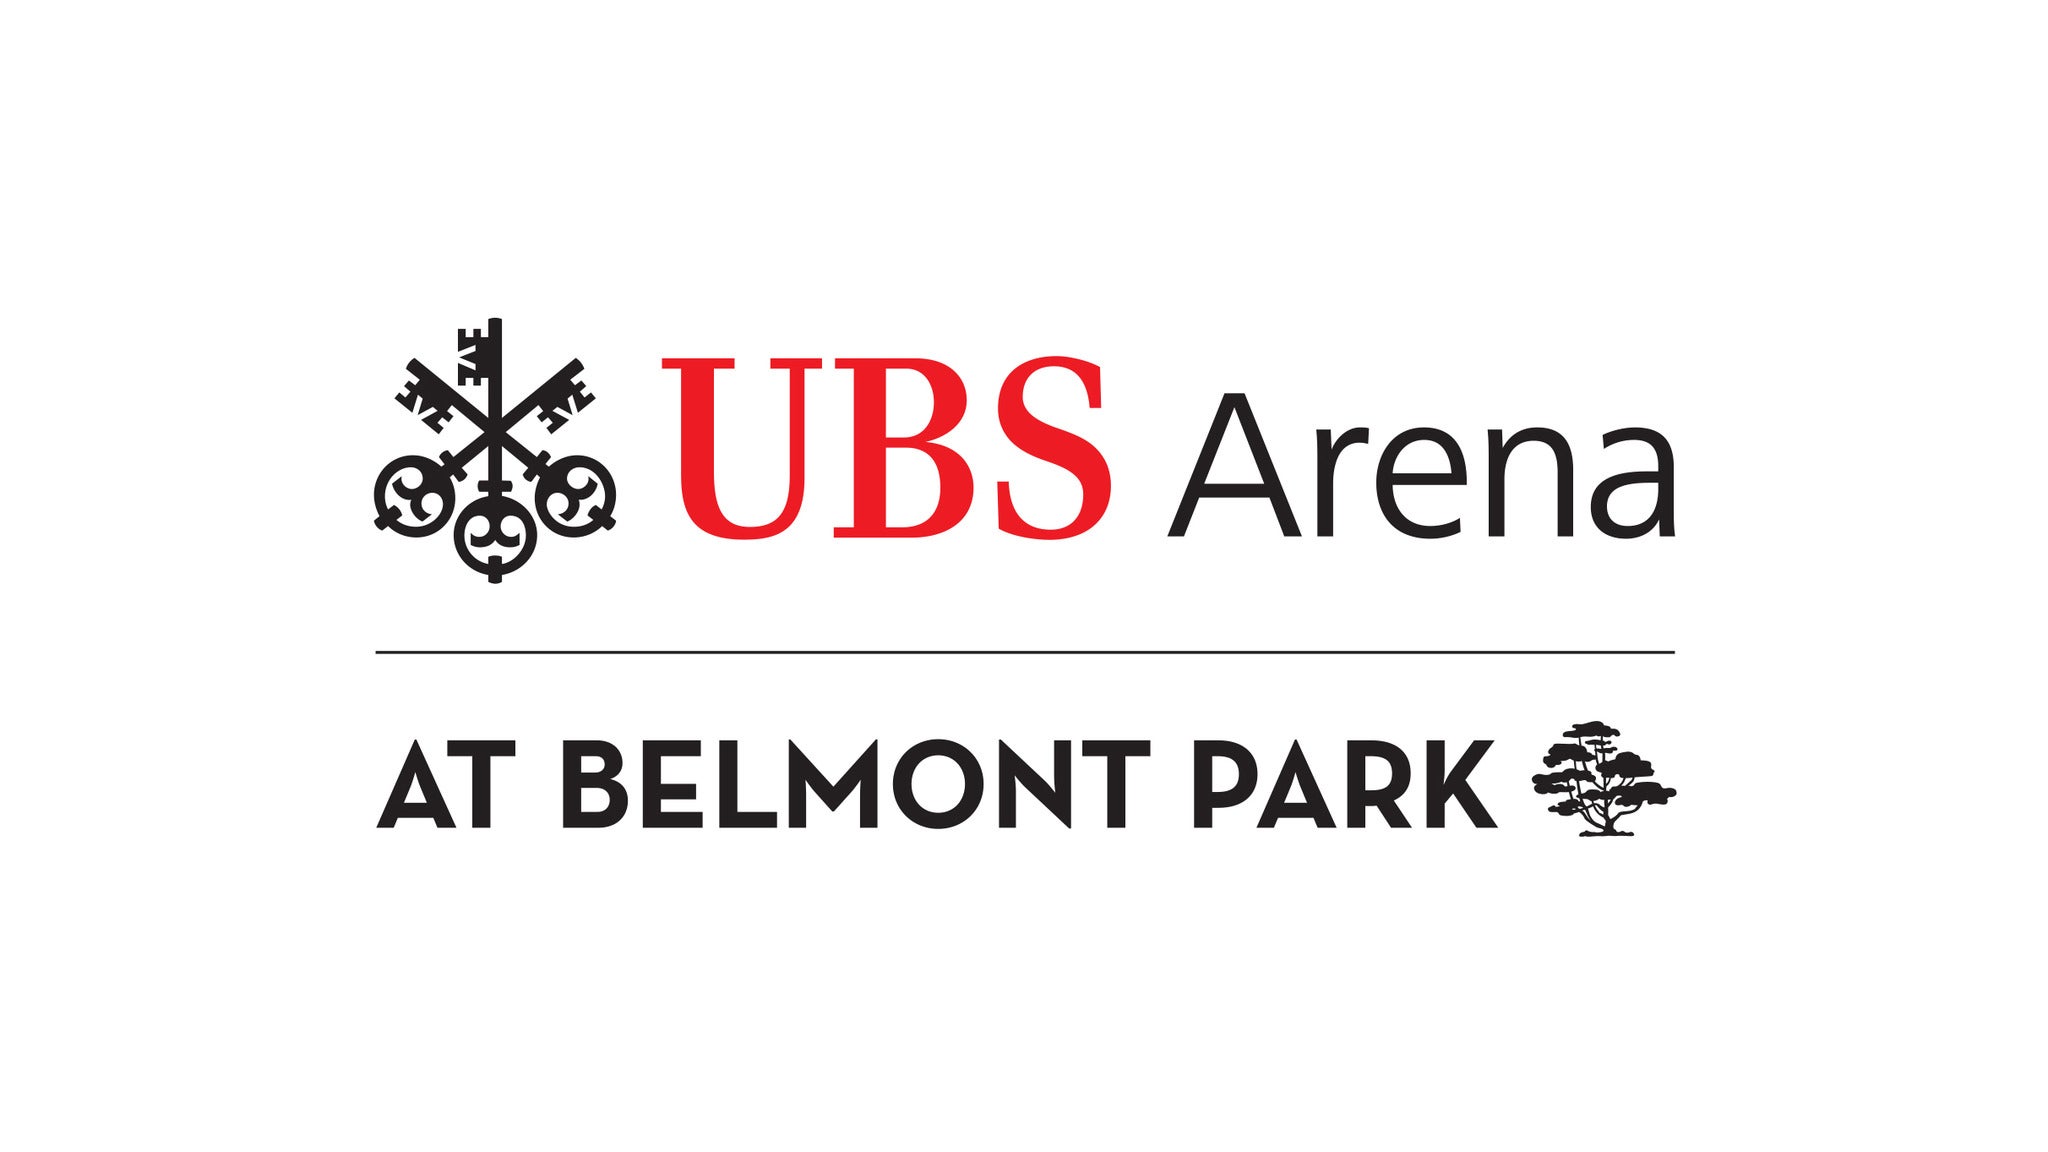 UBS Arena Parking: Stevie Nicks in Belmont Park promo photo for Internet presale offer code